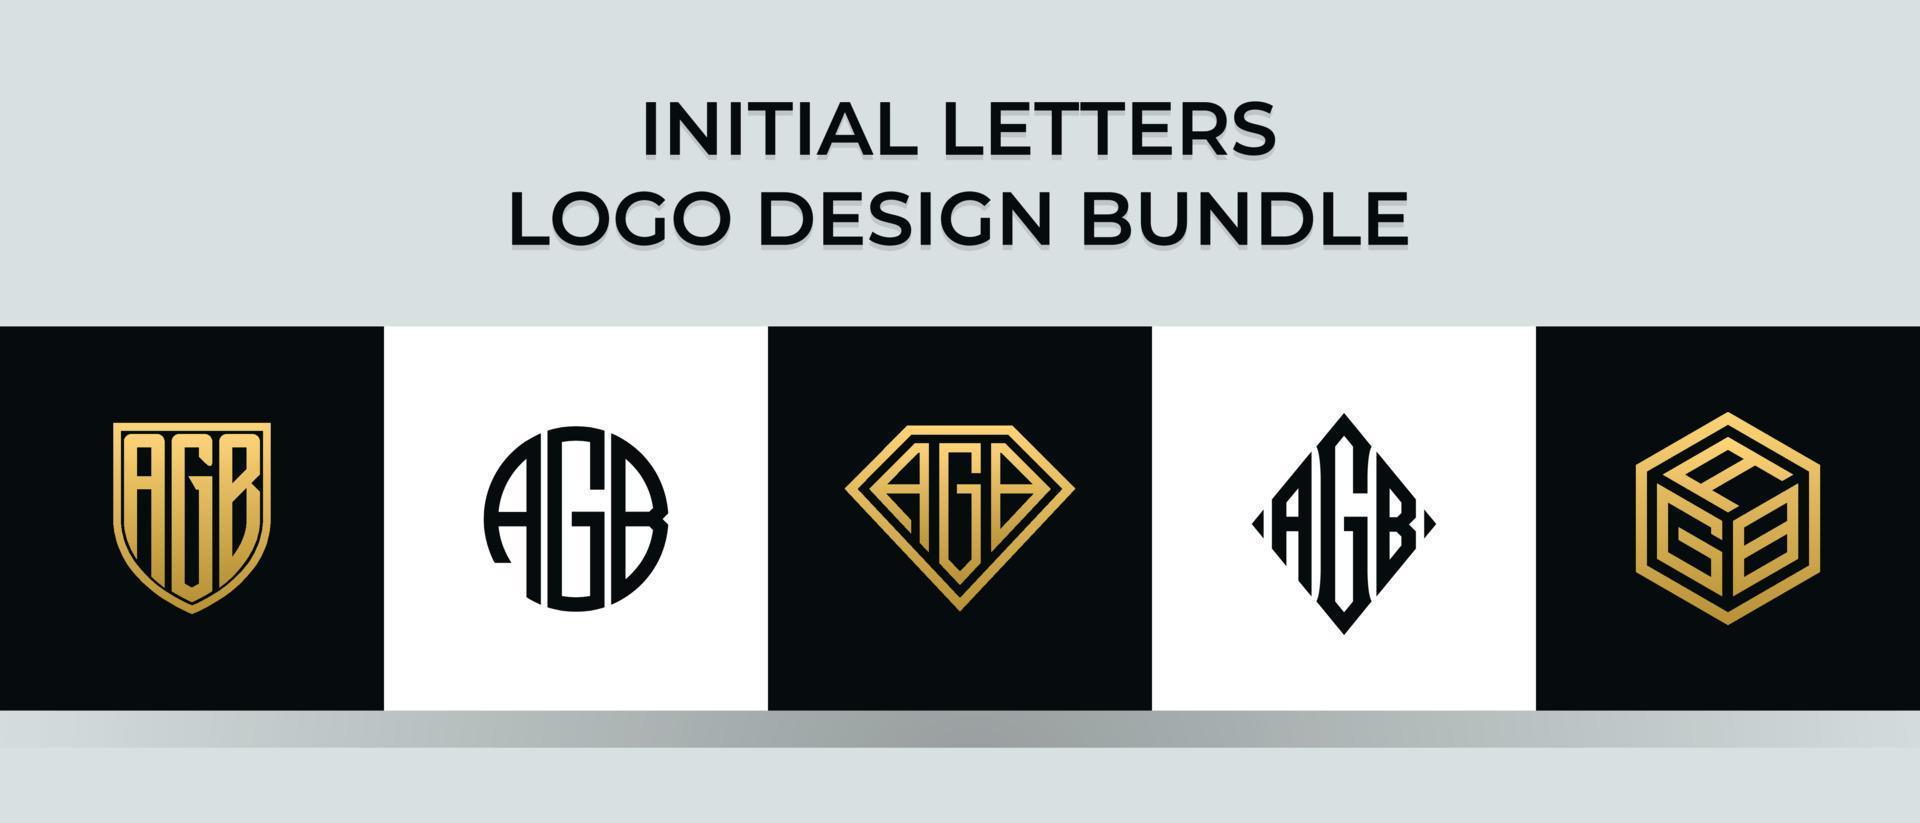 paquete de diseños de logotipo de letras iniciales agb vector